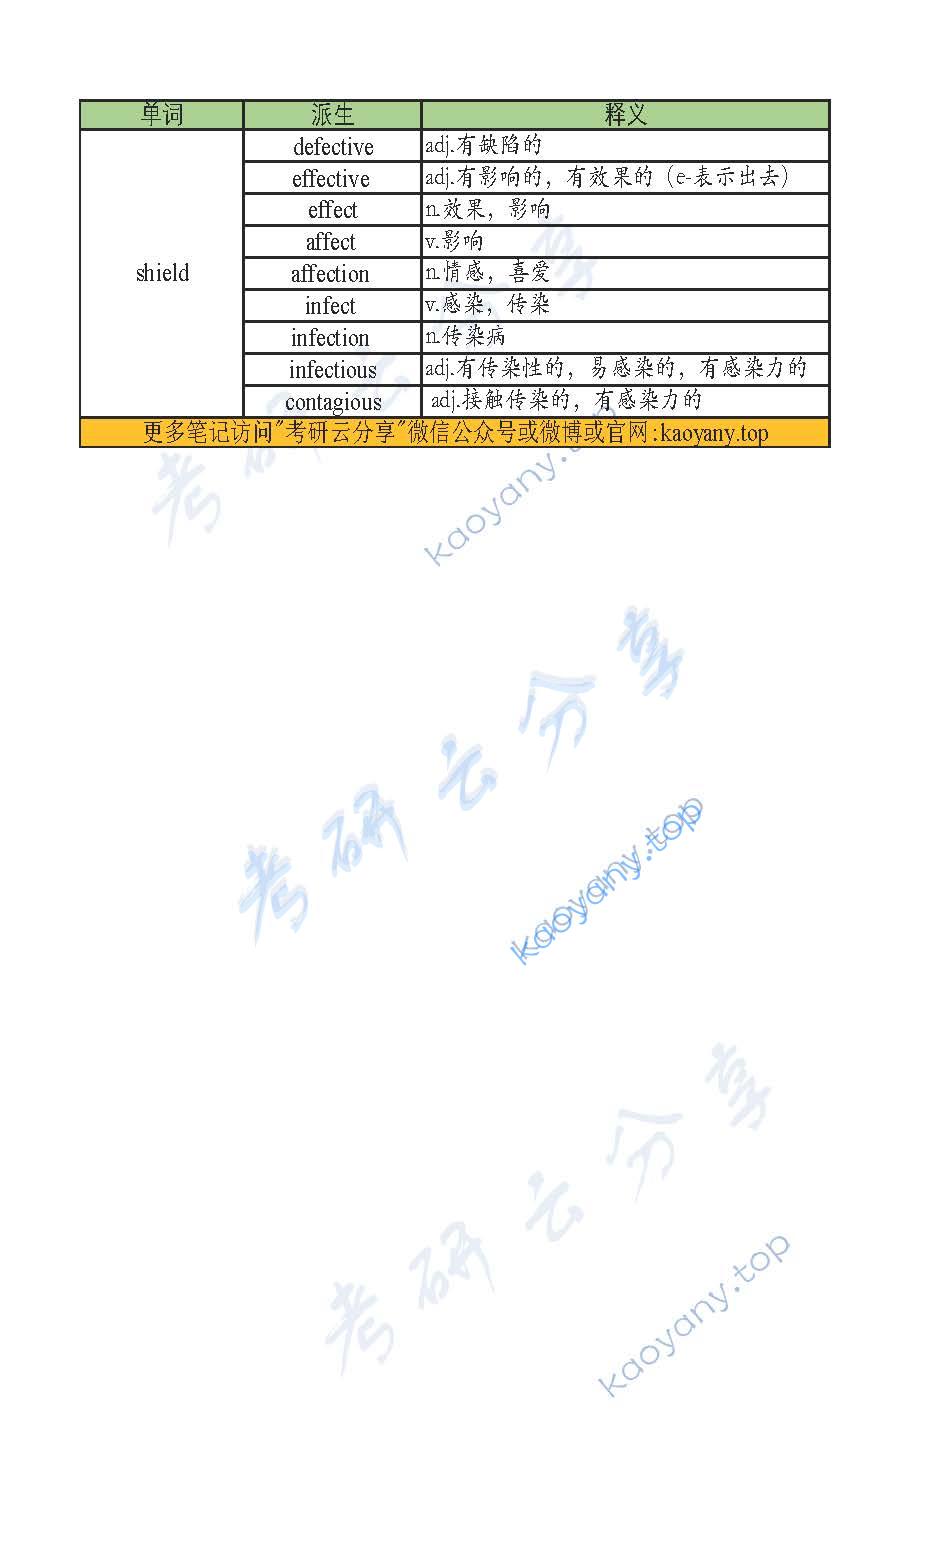 刘晓艳：趣记助记背诵笔记unit11.pdf,刘晓艳,21刘晓艳词汇趣记助记,第2张